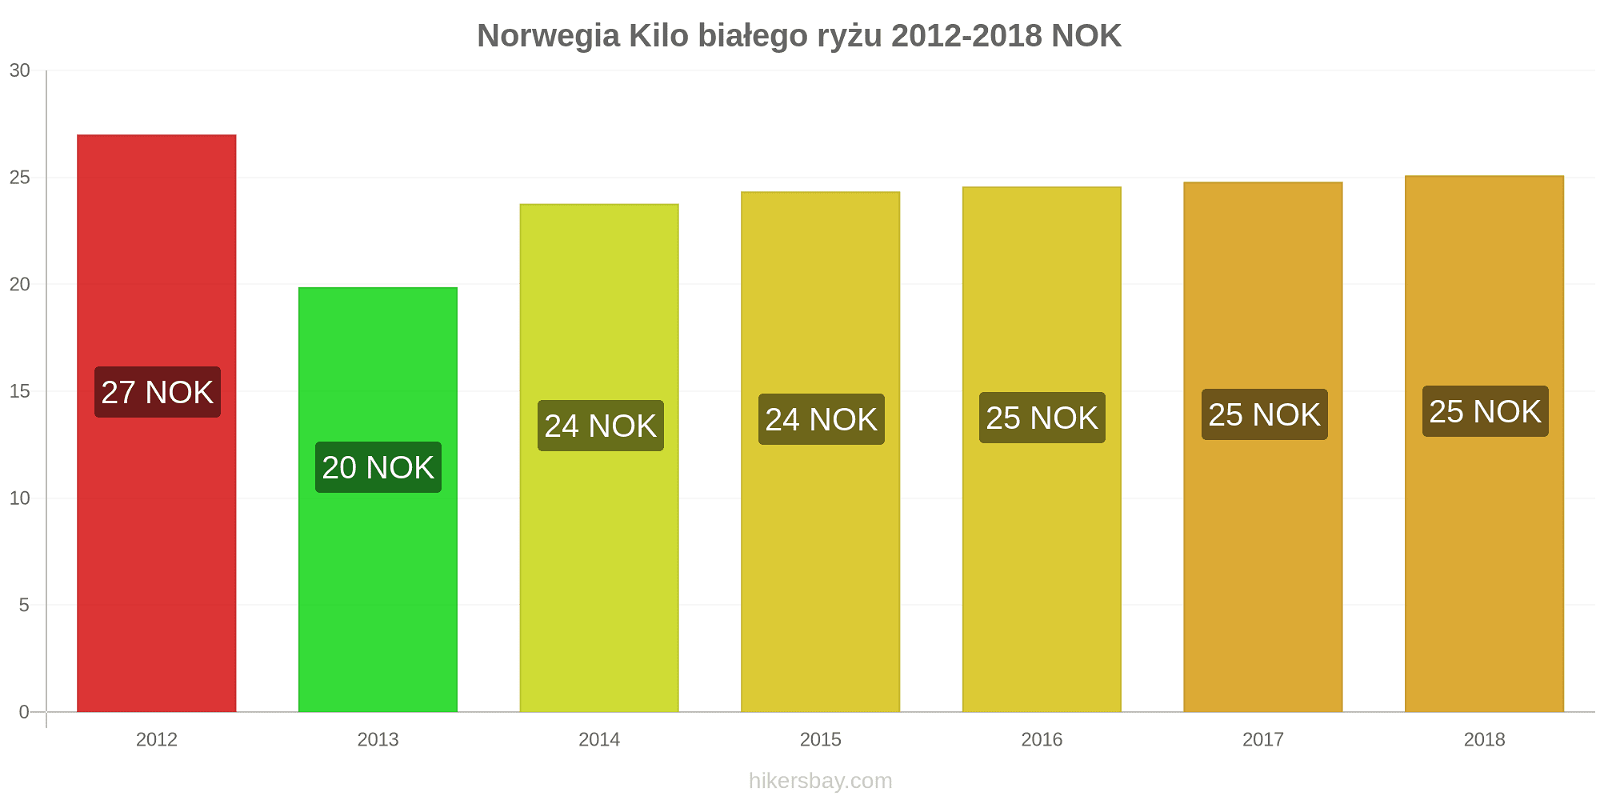 Norwegia zmiany cen Kilo białego ryżu hikersbay.com